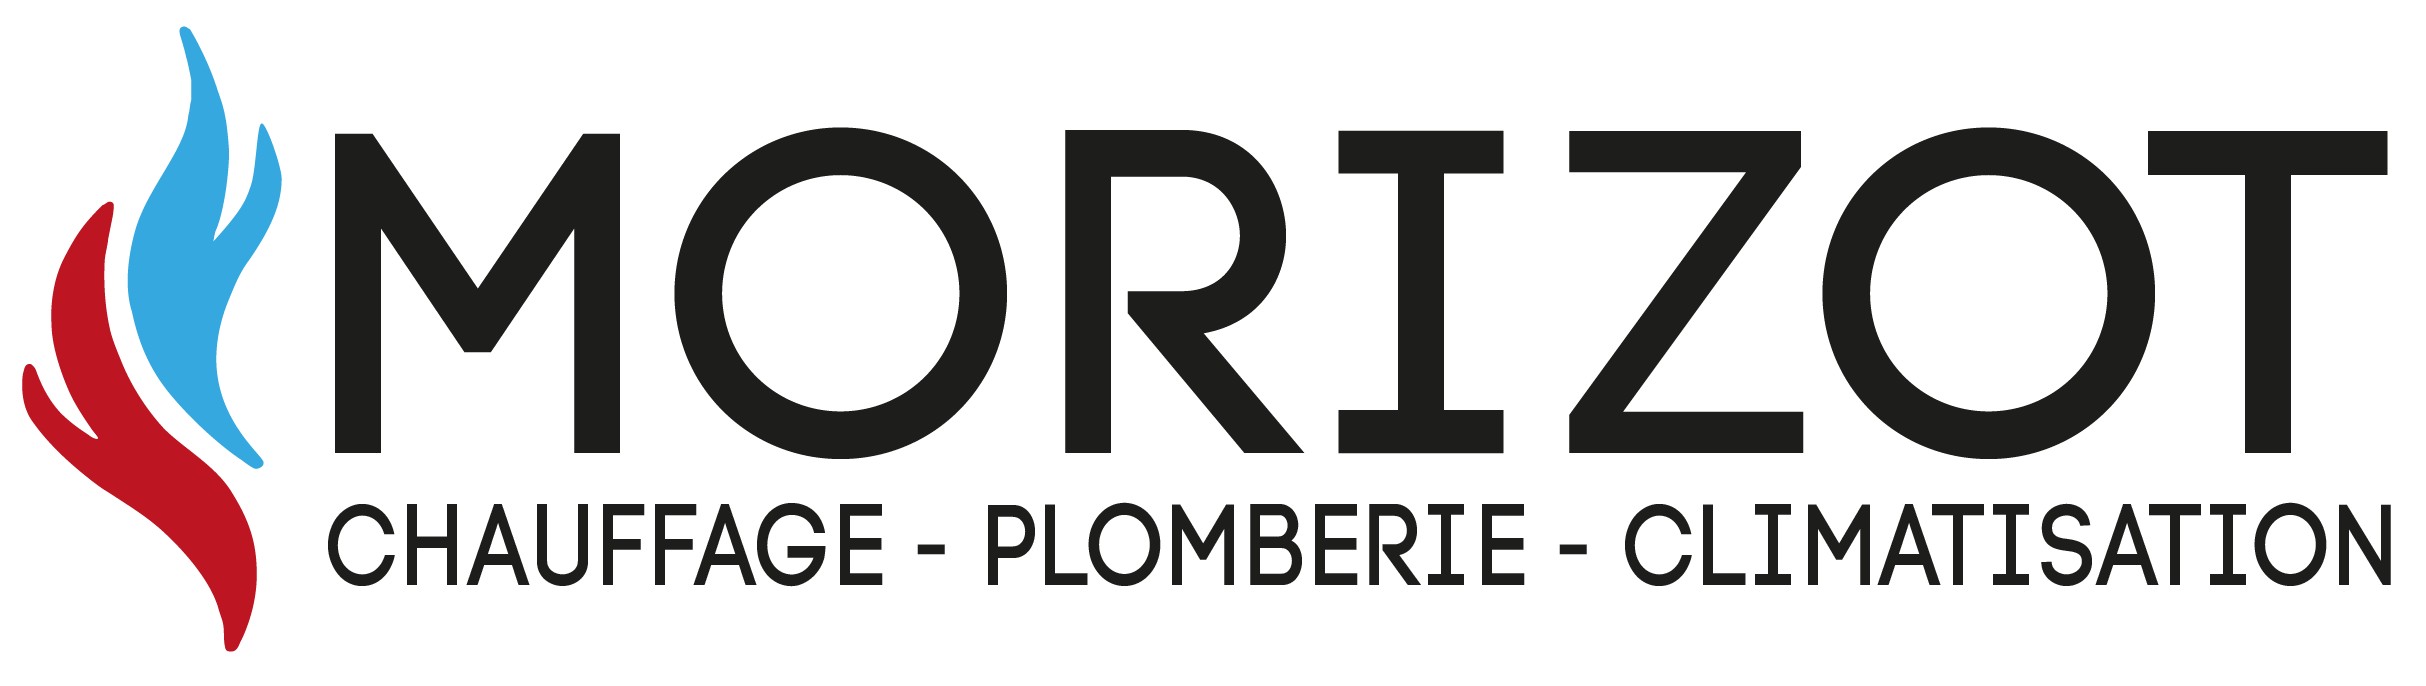 Sarl Morizot, Climatisation à Carpentras. Installation, entretien, dépannage, climatisation, Carpentras et Vaucluse